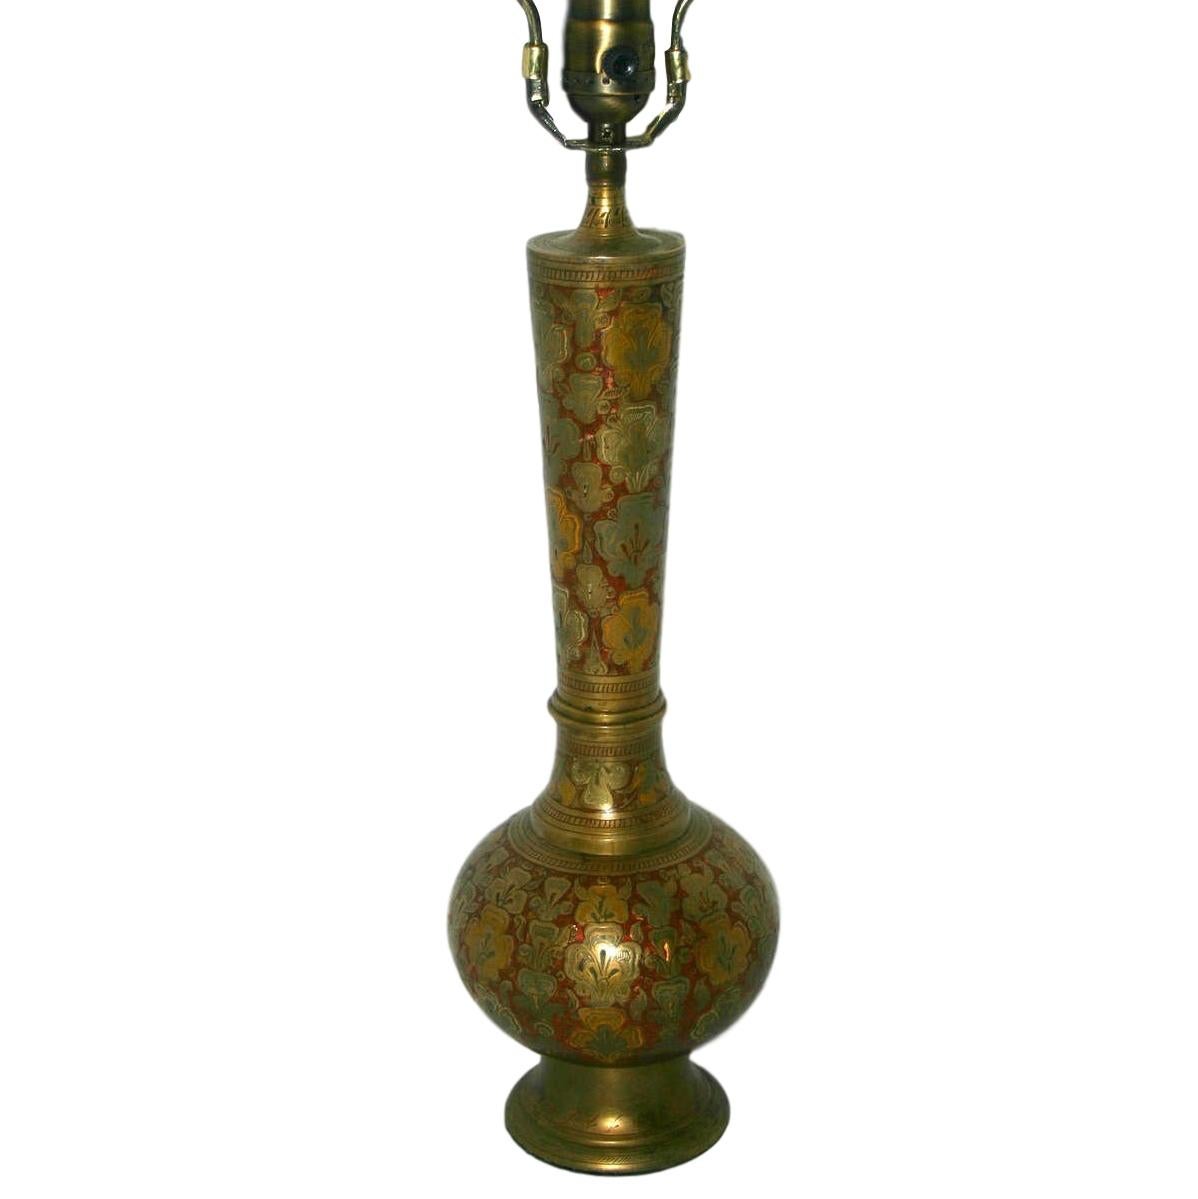 Eine einzelne türkische Tischlampe aus gehämmertem und emailliertem Messing aus den 1930er Jahren mit Blattwerk und Blumenmotiv auf dem Körper.

Abmessungen:
Höhe des Körpers: 15,5